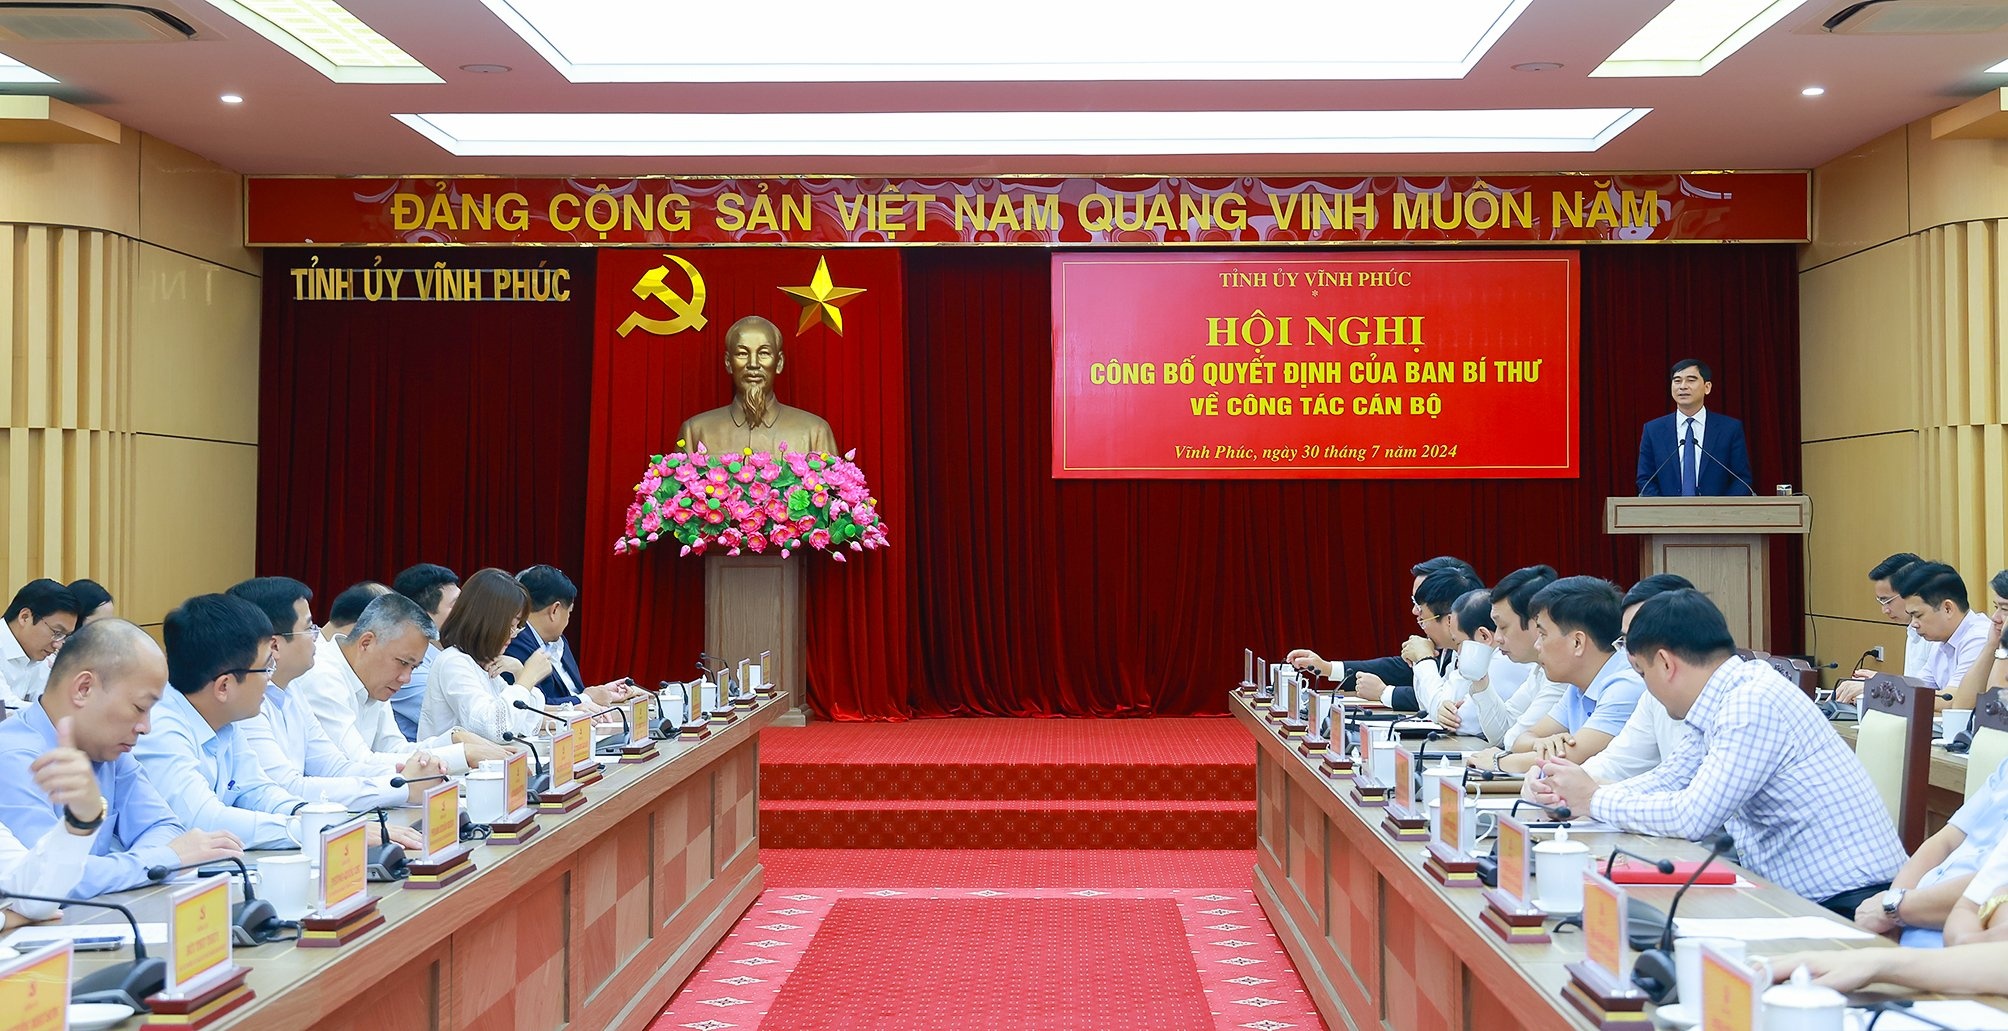 Hội nghị công bố quyết định ông Trần Duy Đông giữ chức Phó Bí thư Tỉnh ủy Vĩnh Phúc nhiệm kỳ 2020-2025